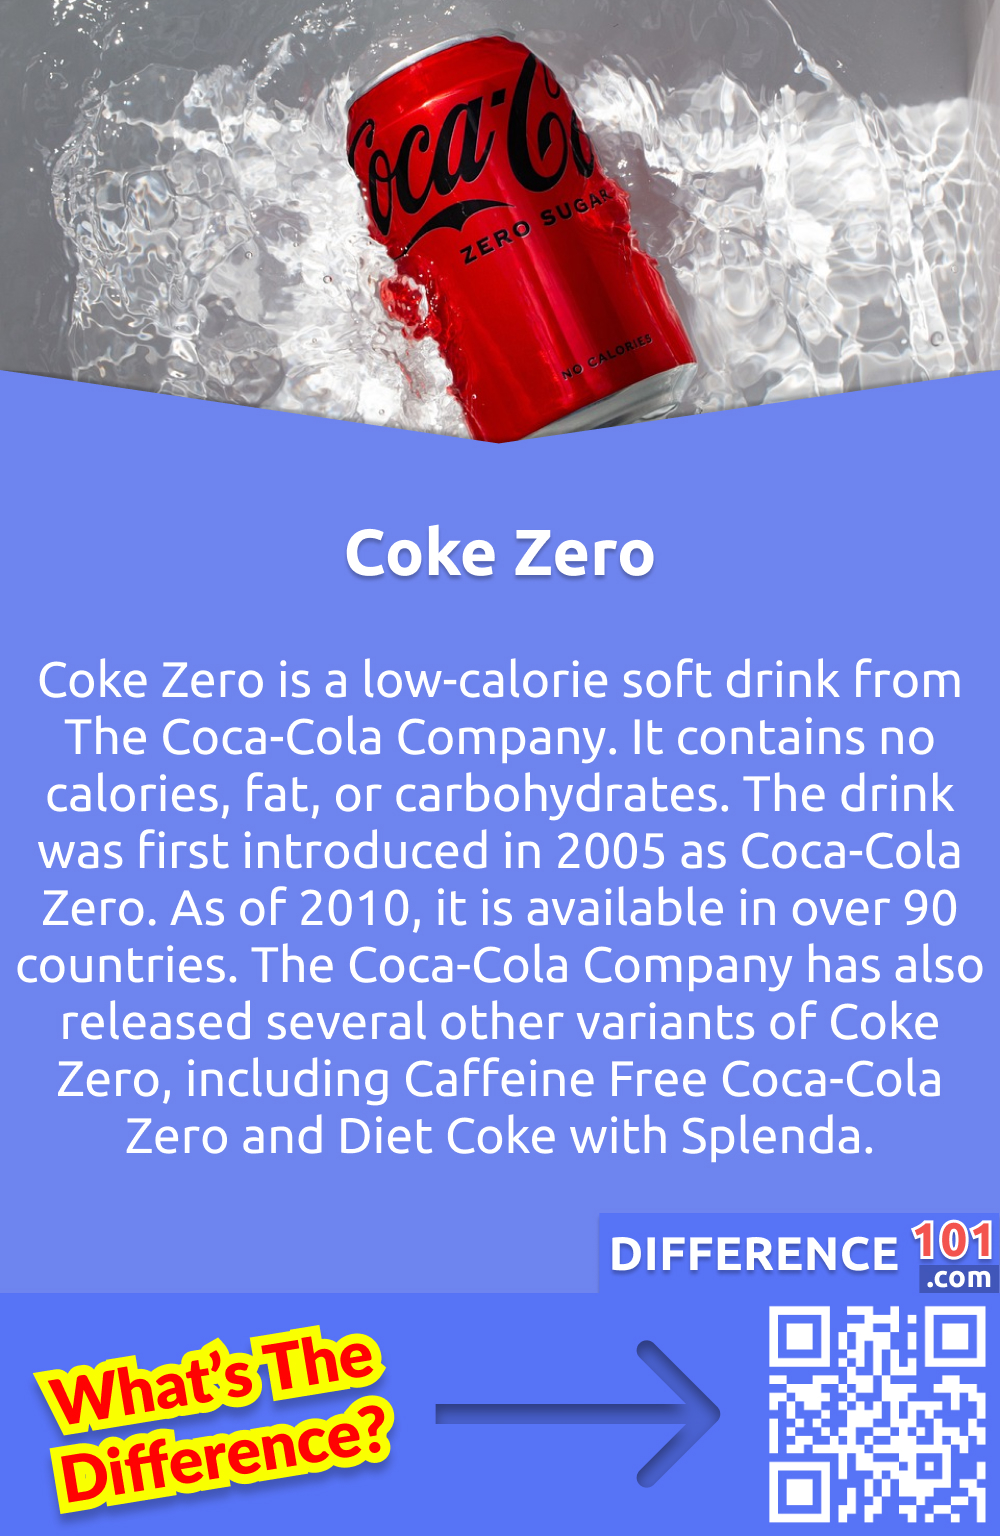 O que é Coque Zero? Coca-Cola Zero é um refrigerante de baixa caloria da The Coca-Cola Company. Não contém calorias, gordura ou carboidratos. A bebida foi introduzida pela primeira vez em 2005 como Coca-Cola Zero. A partir de 2010, ela está disponível em mais de 90 países. The Coca-Cola Company também lançou várias outras variantes de Coca-Cola Zero, incluindo Coca-Cola Zero sem cafeína e Coca-Cola Diet com Splenda.